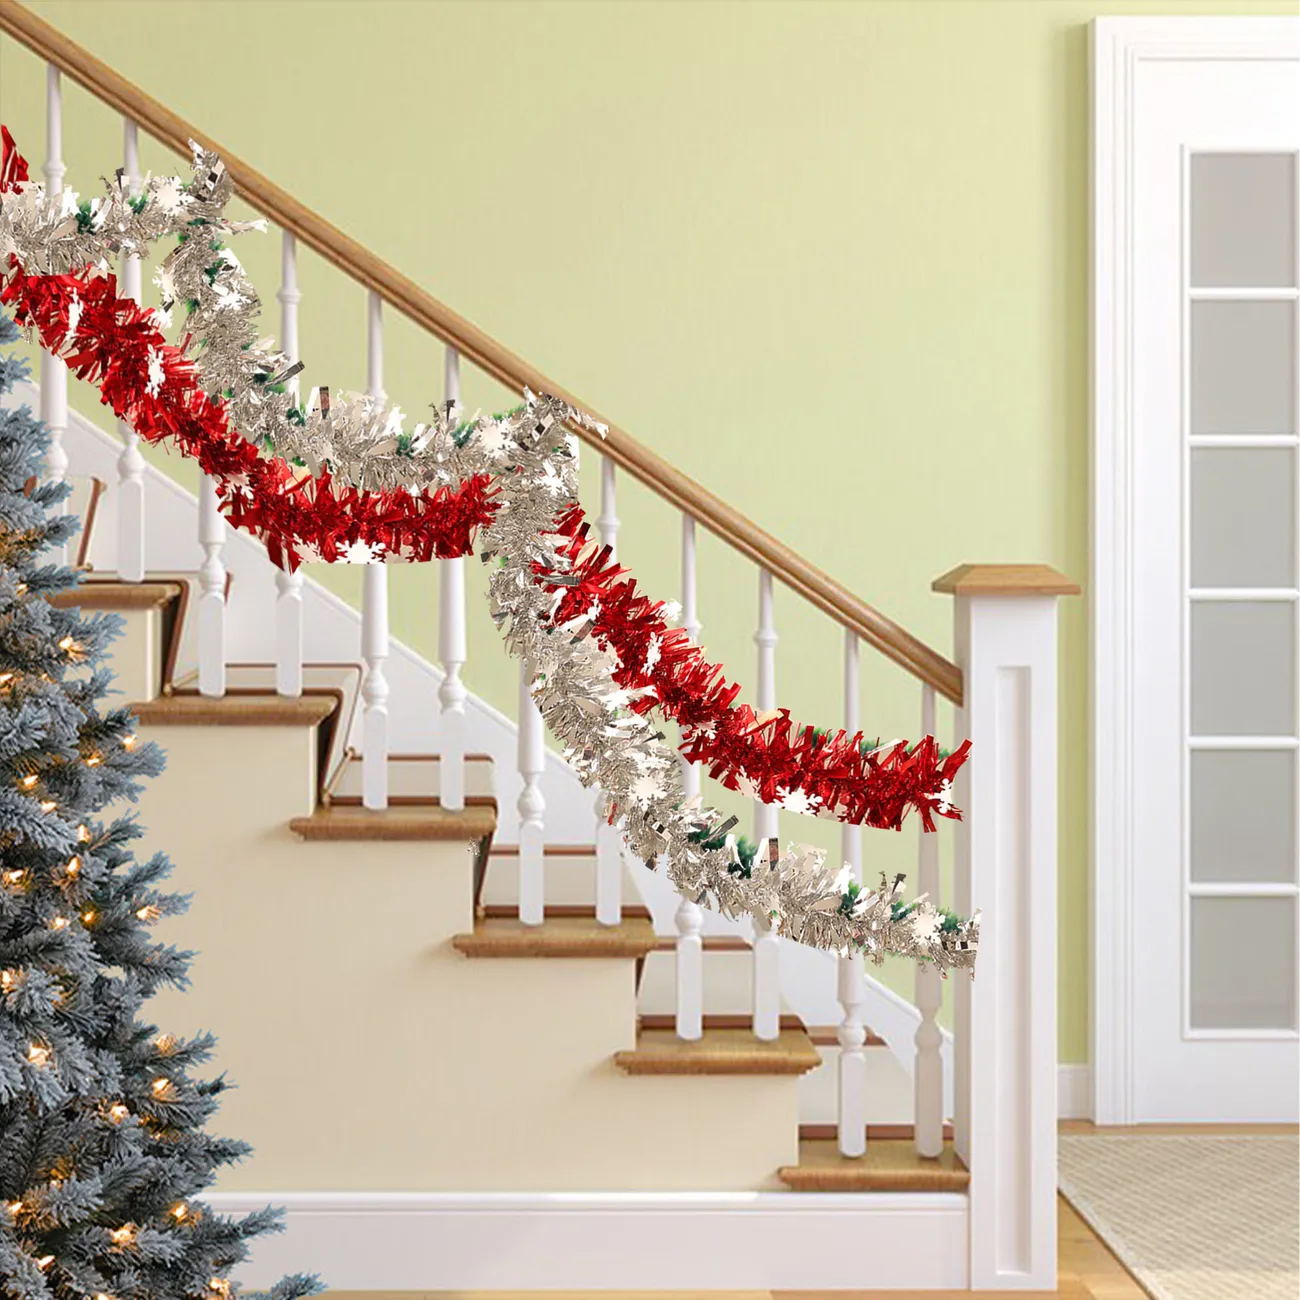 Fita Decorativa de Natal com 5 Pacotes com Flocos de Neve - Decoração de Festa de Férias em Cores Aleatórias colorido big image 1